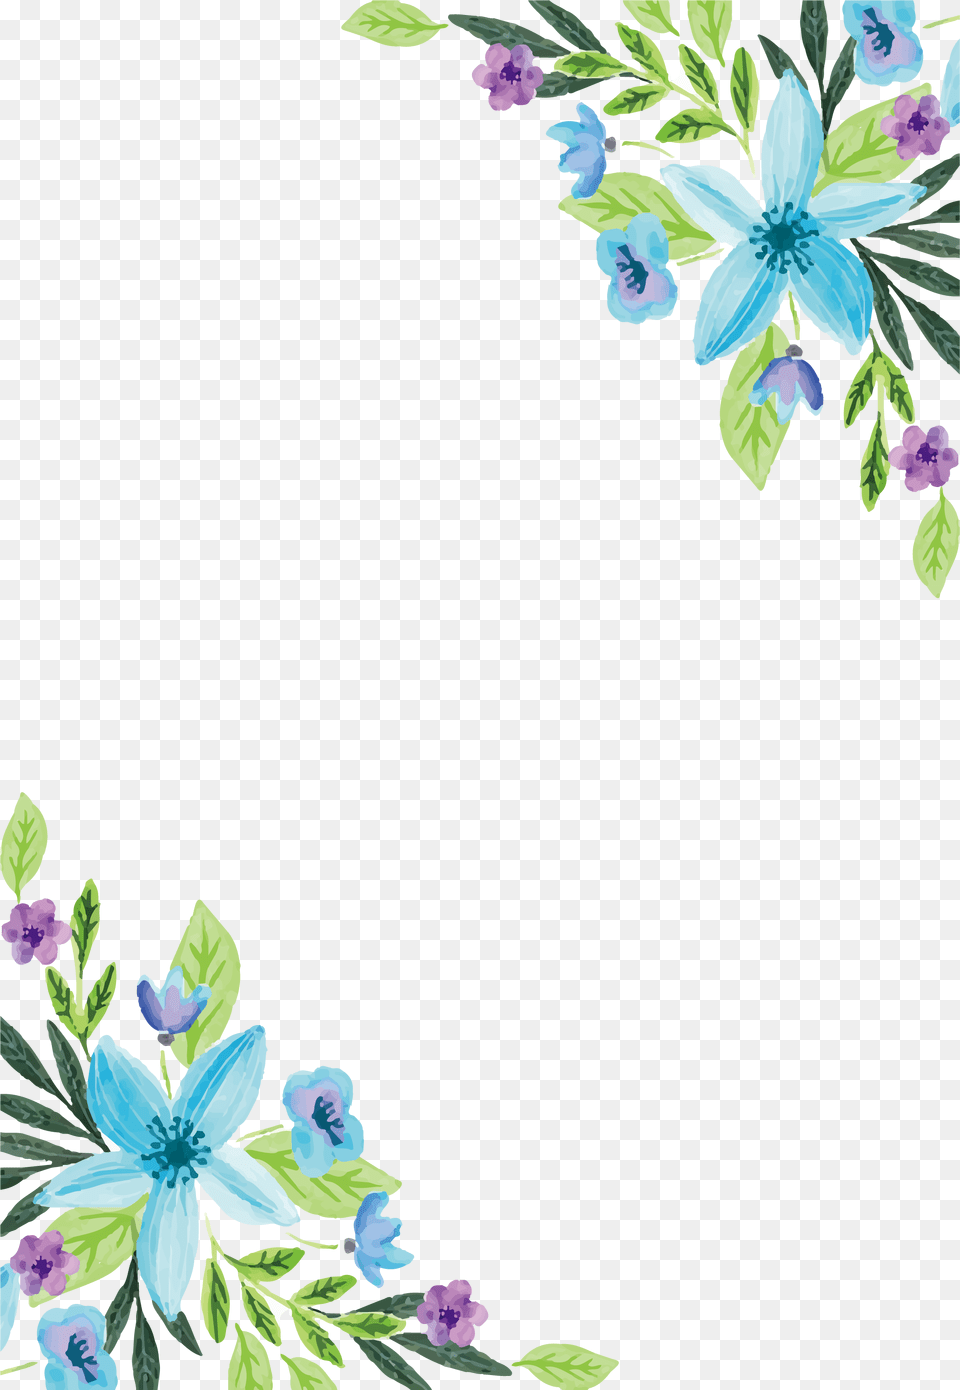 Blue Flower Border Water Color Flower Border Hd, Art, Floral Design, Graphics, Pattern Png Image